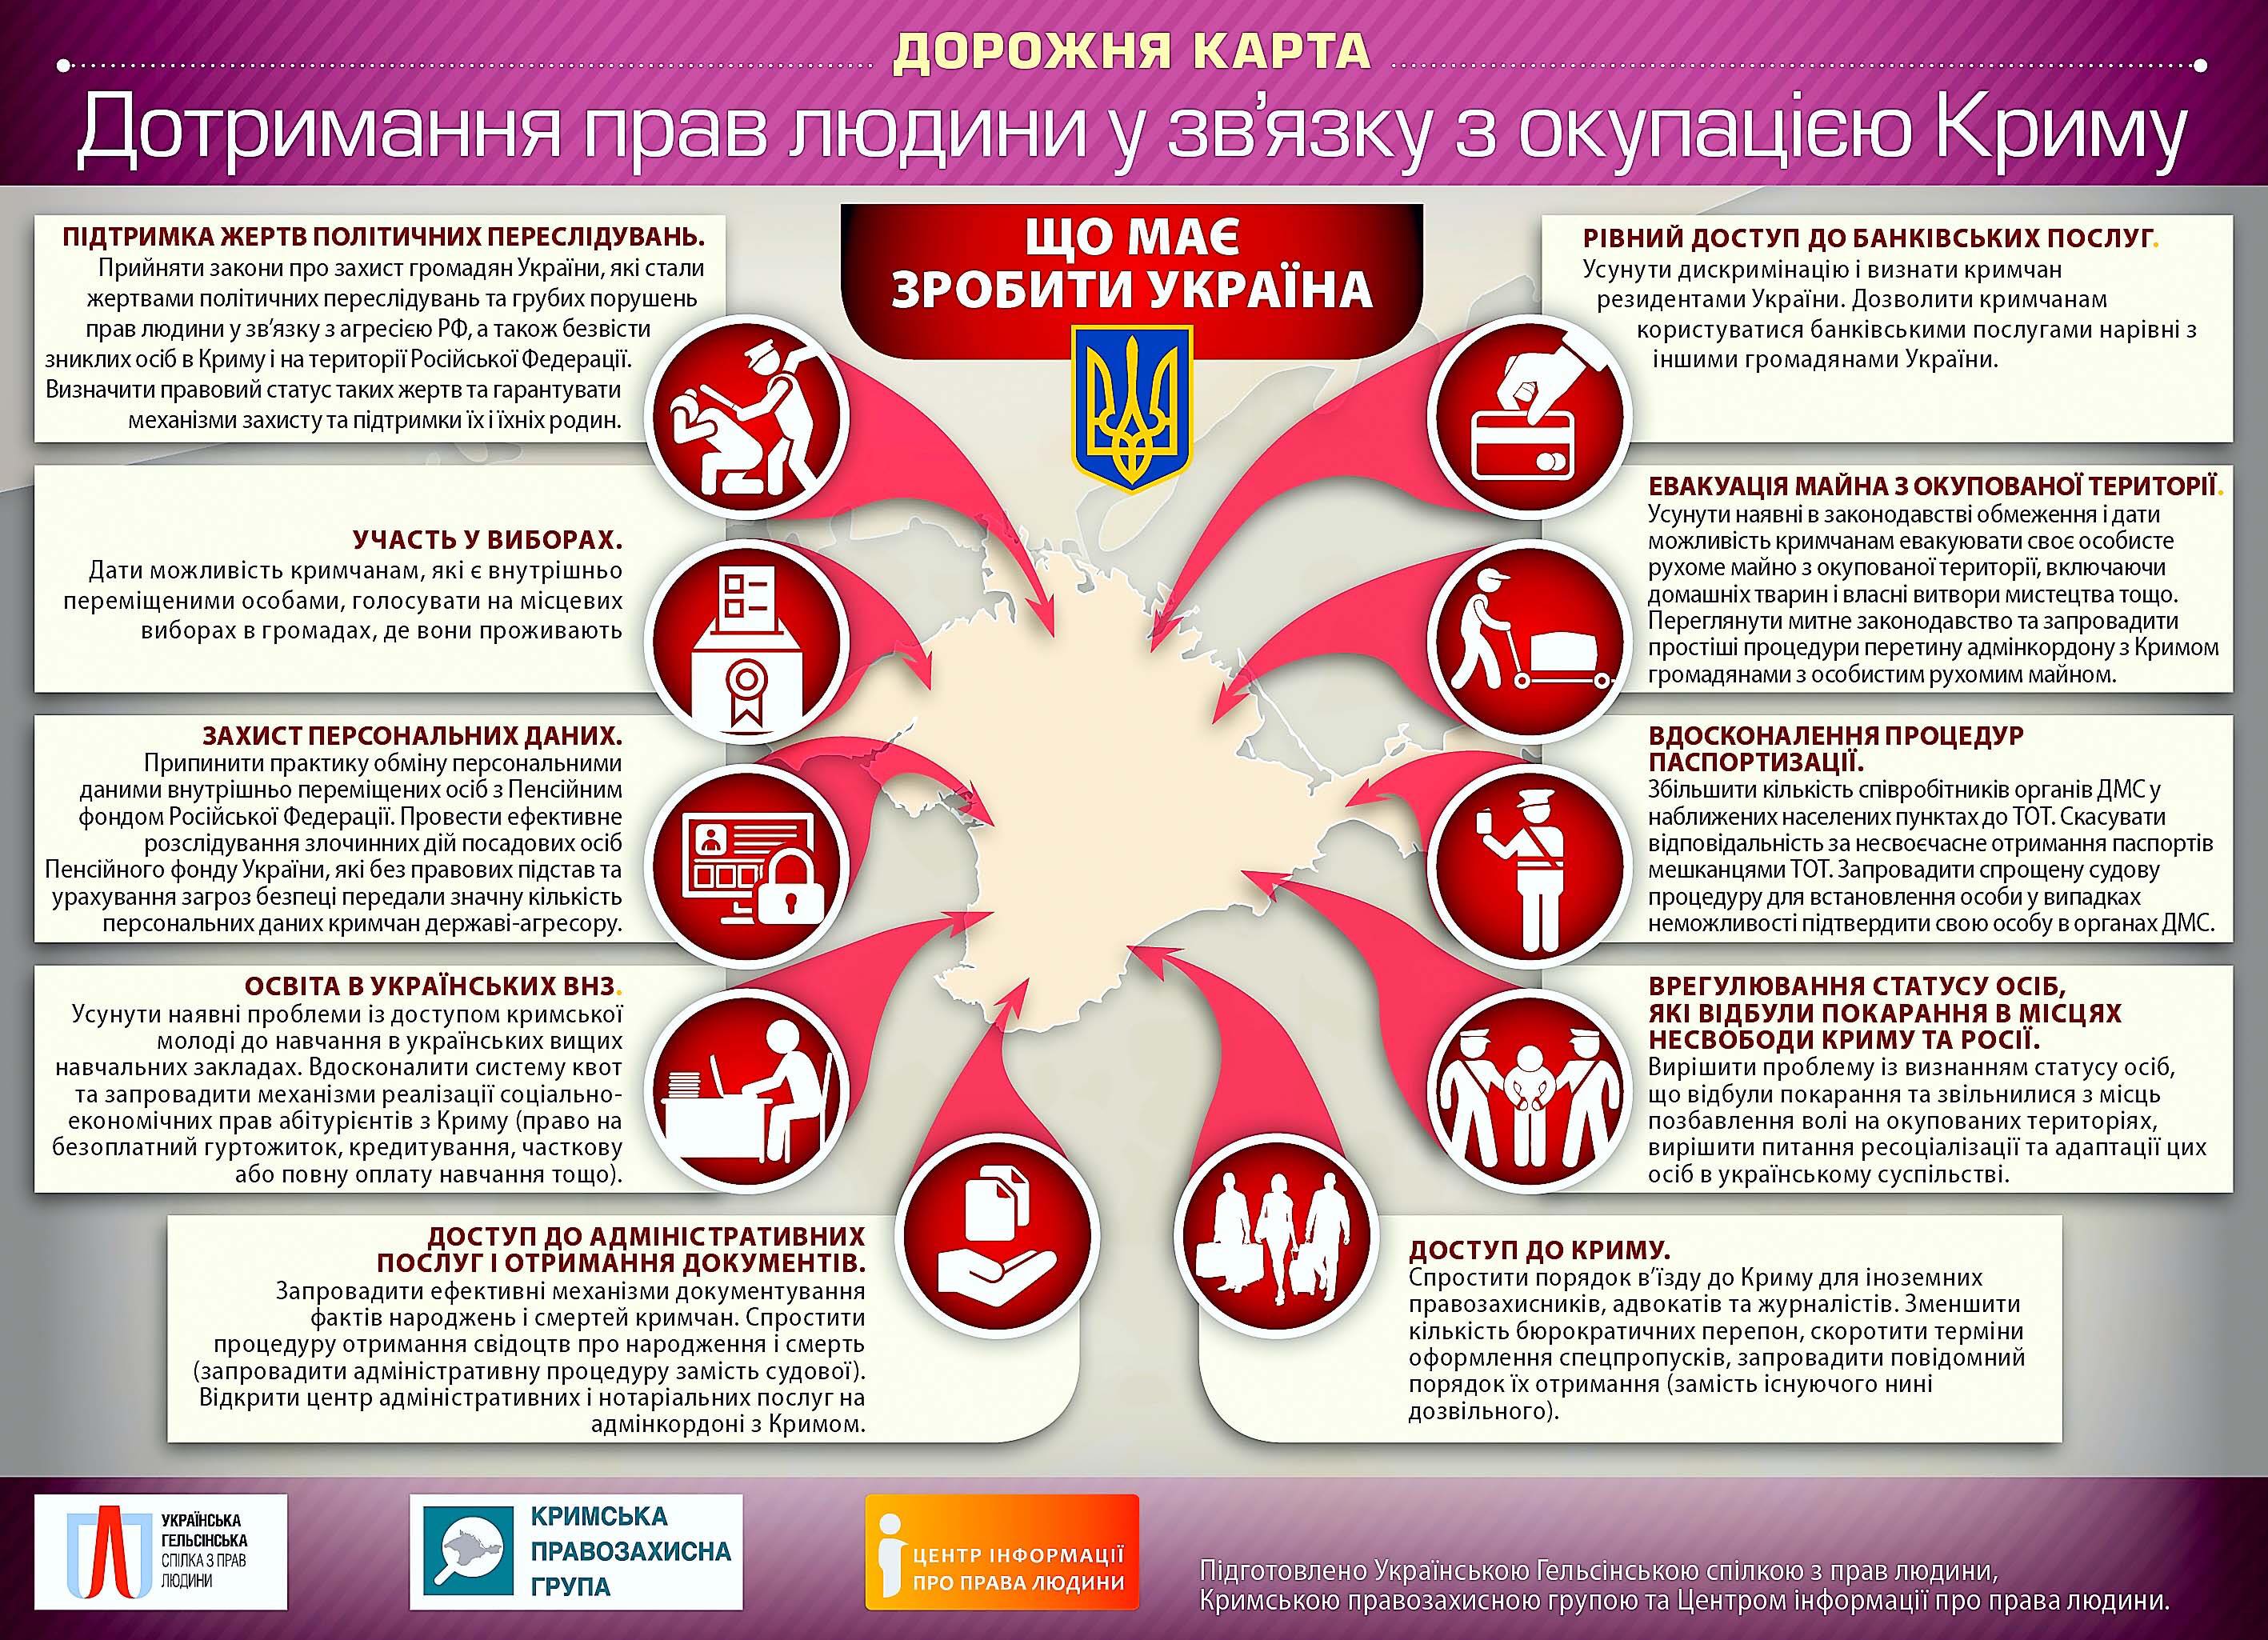 Десять шагов, которые должна сделать Украина для защиты прав крымчан